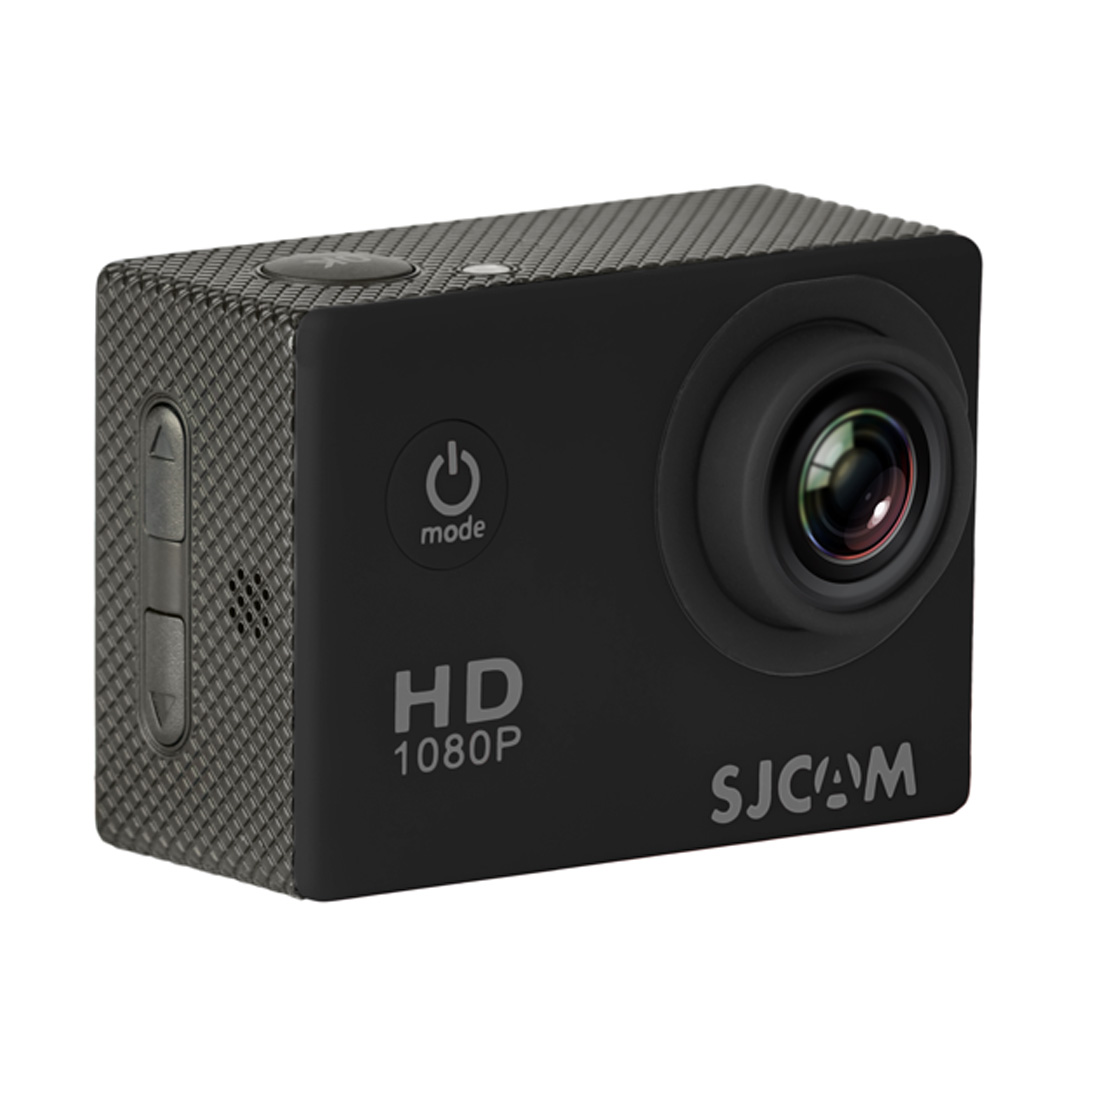 Купить камеру sjcam. Экшн-камера SJCAM sj5000x Elite. Экшн-камера SJCAM sj4000 Black. Экшн-камера denn dac211. Экшн-камера denn dac411.